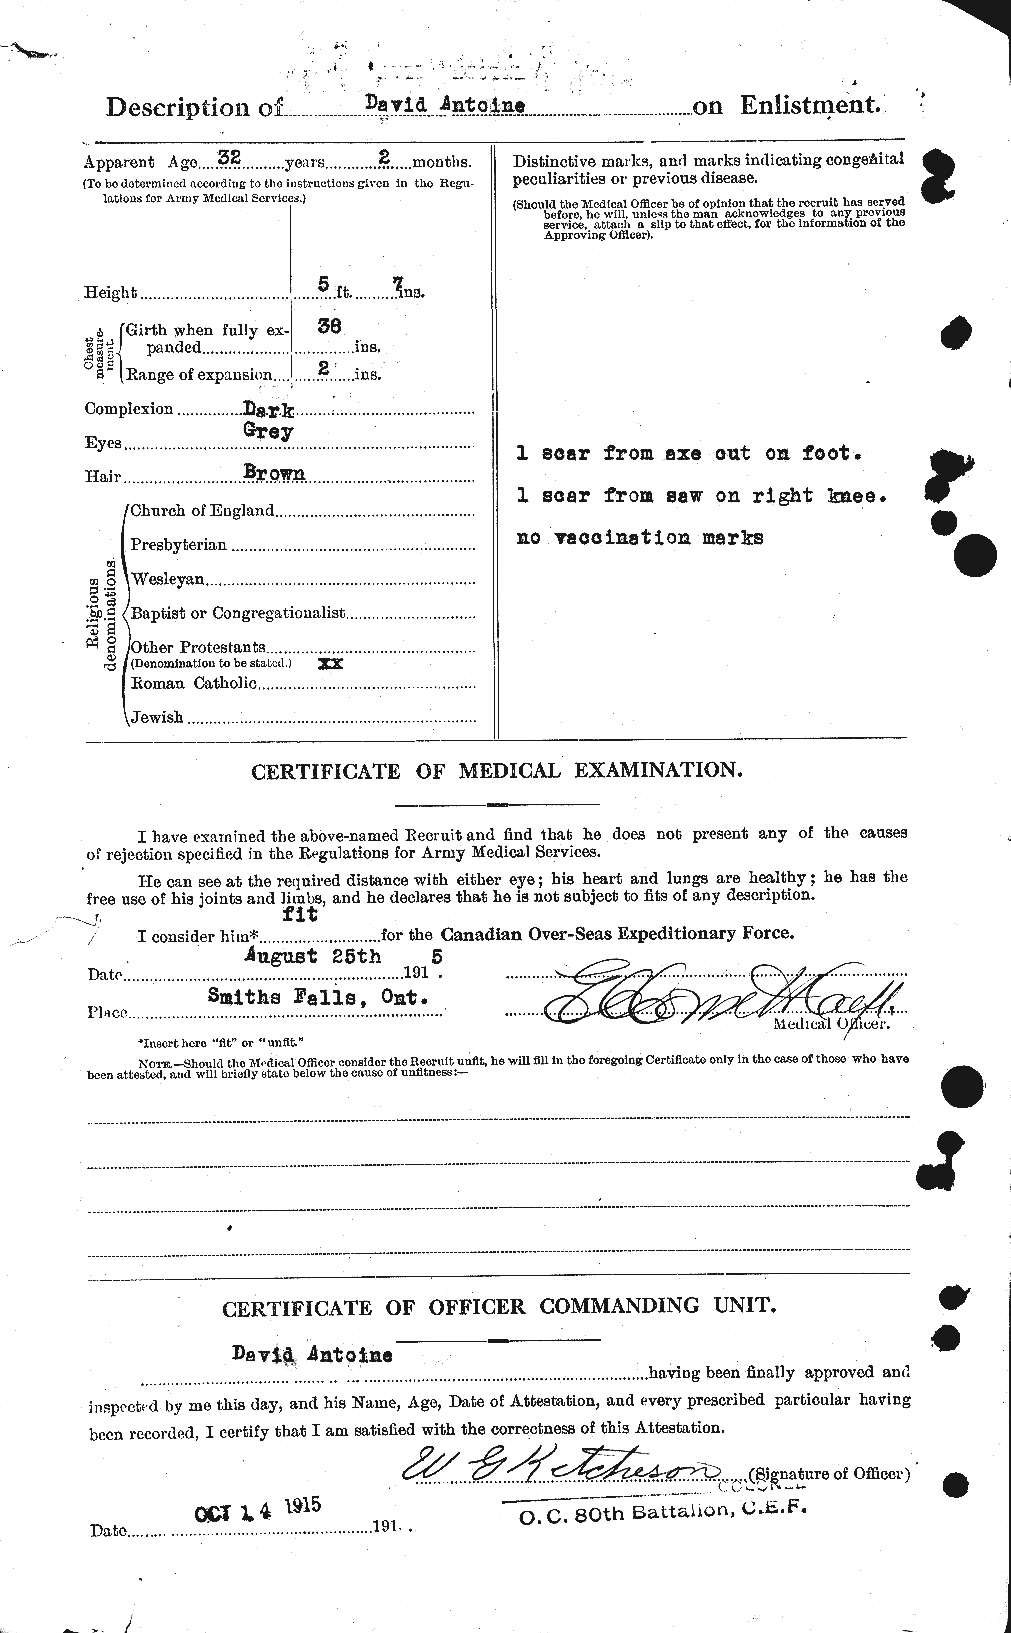 Dossiers du Personnel de la Première Guerre mondiale - CEC 212119b